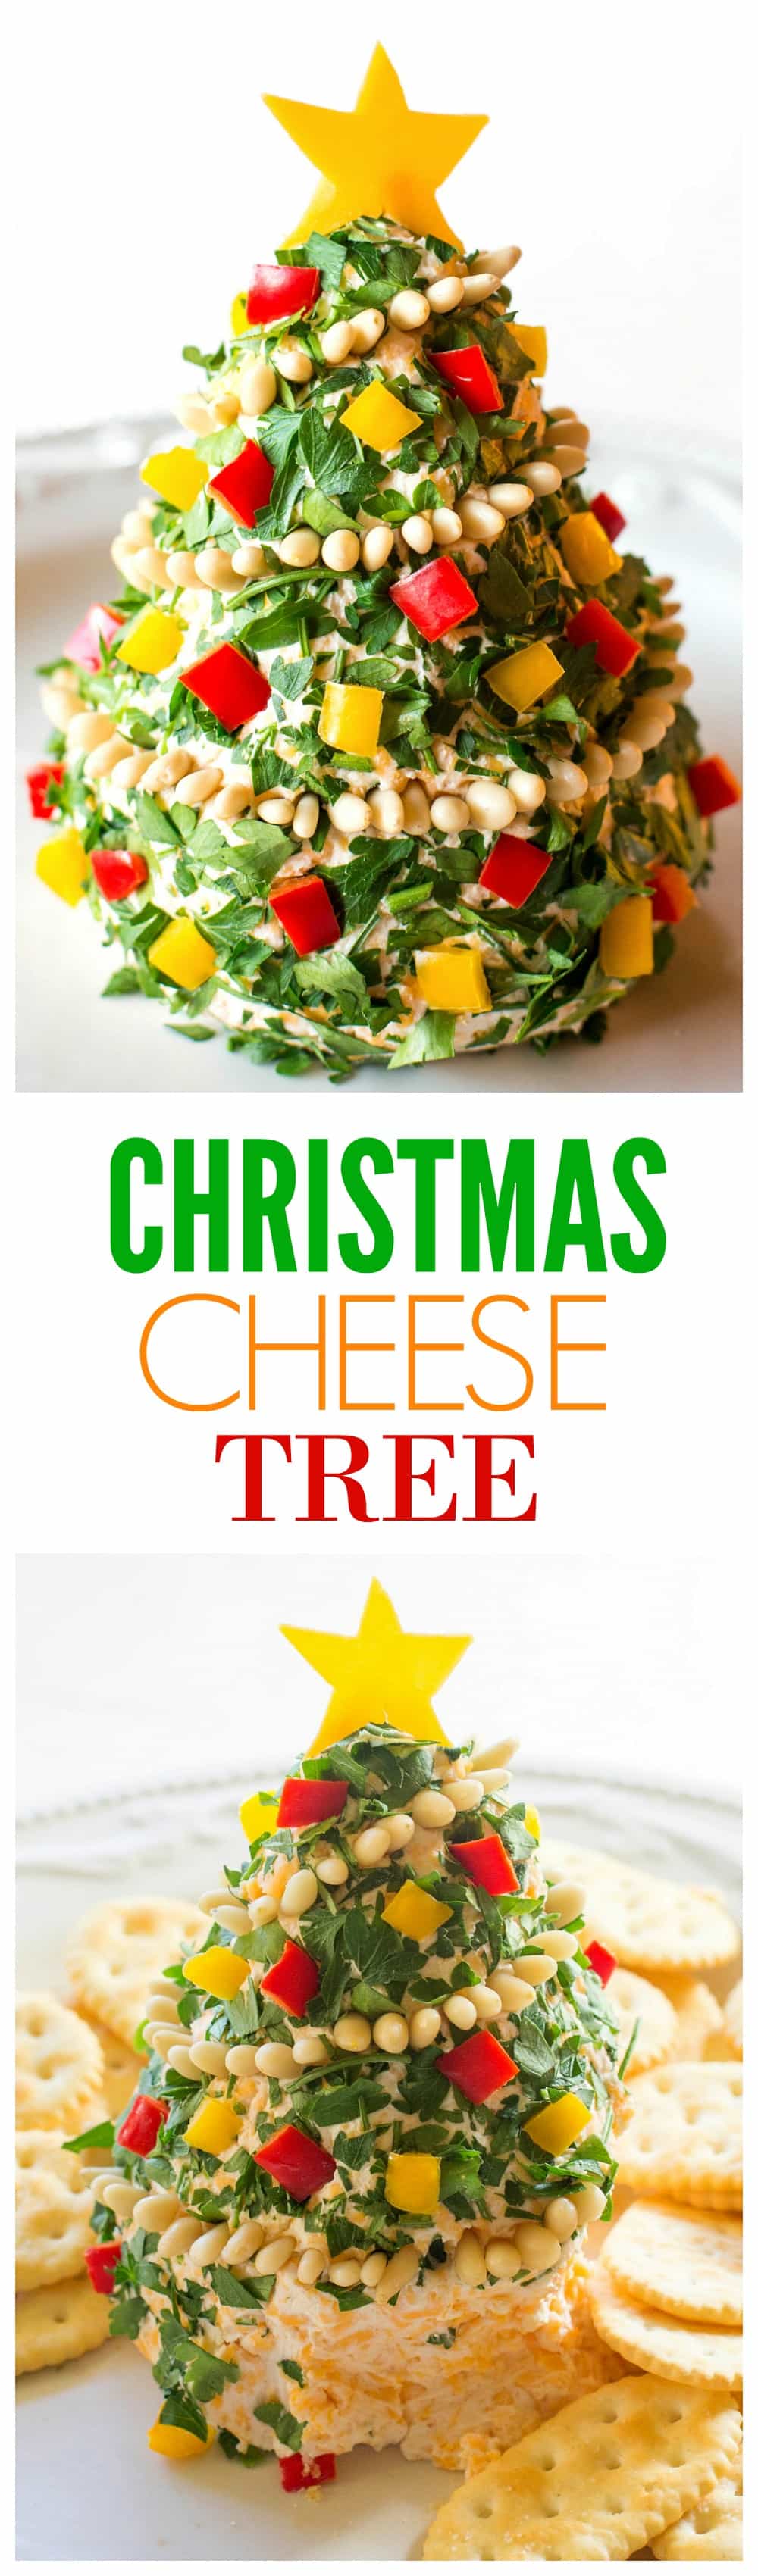 Christmas Cheese Tree - bola de queijo super simples, mas impressionante, em forma de árvore!  #natal #queijo #árvore #aperitivo #receita